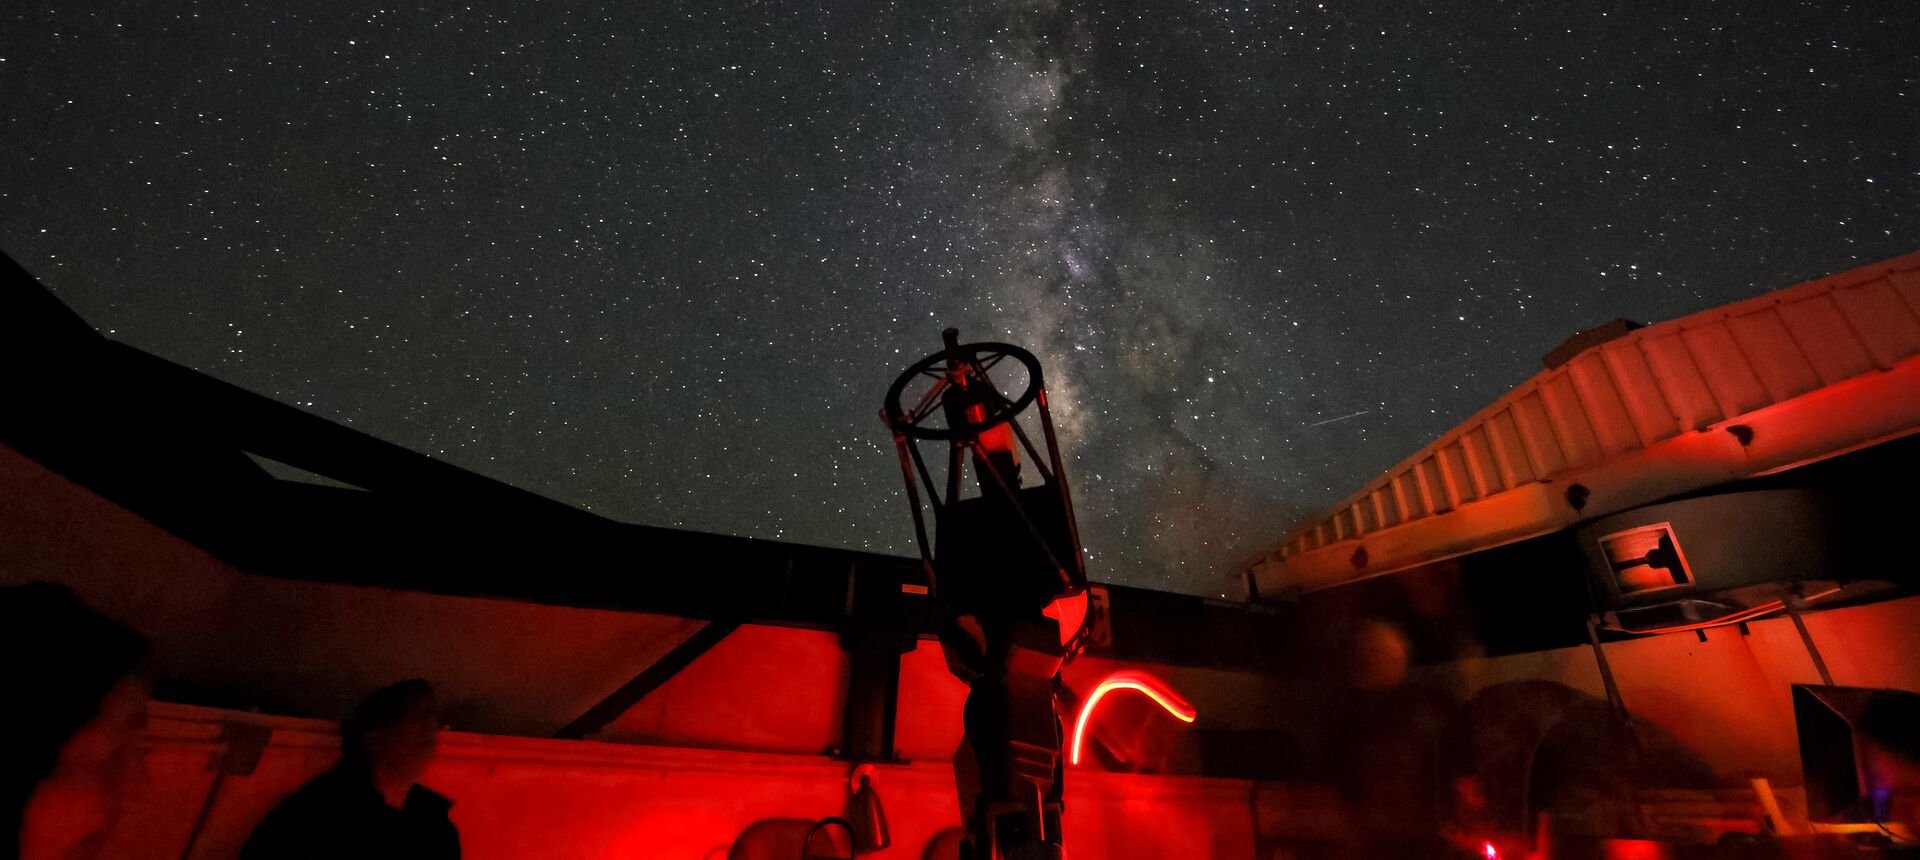 Fotografía del Telescopio de techo corredizo del Centro de Visitas